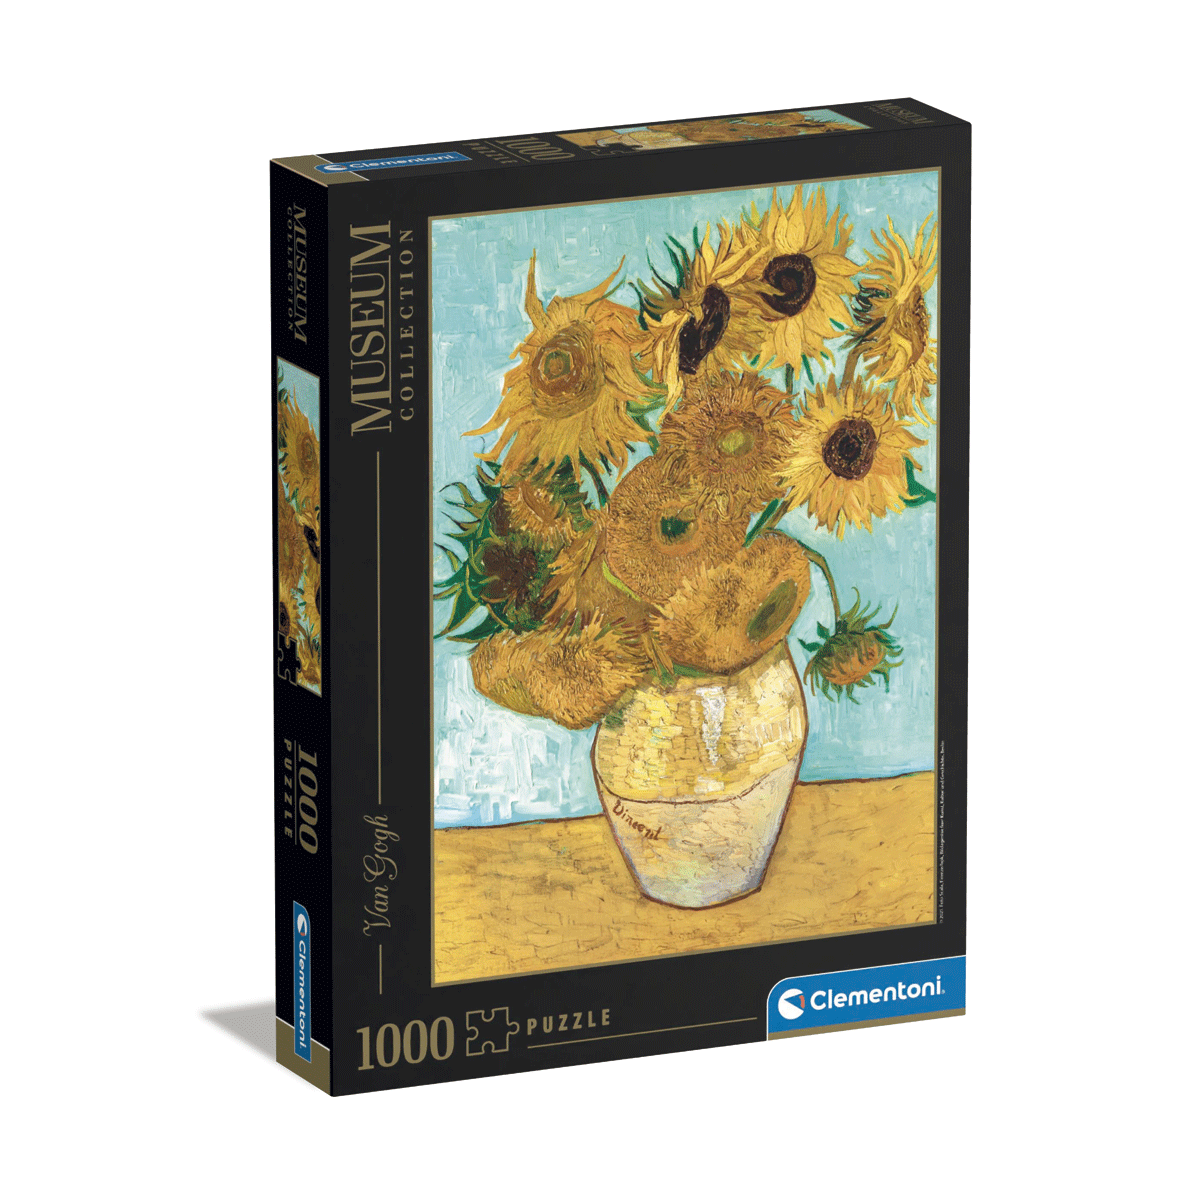 Clementoni puzzle museum collection - van gogh, "sunflowers" - 1000 pezzi, puzzle adulti - CLEMENTONI